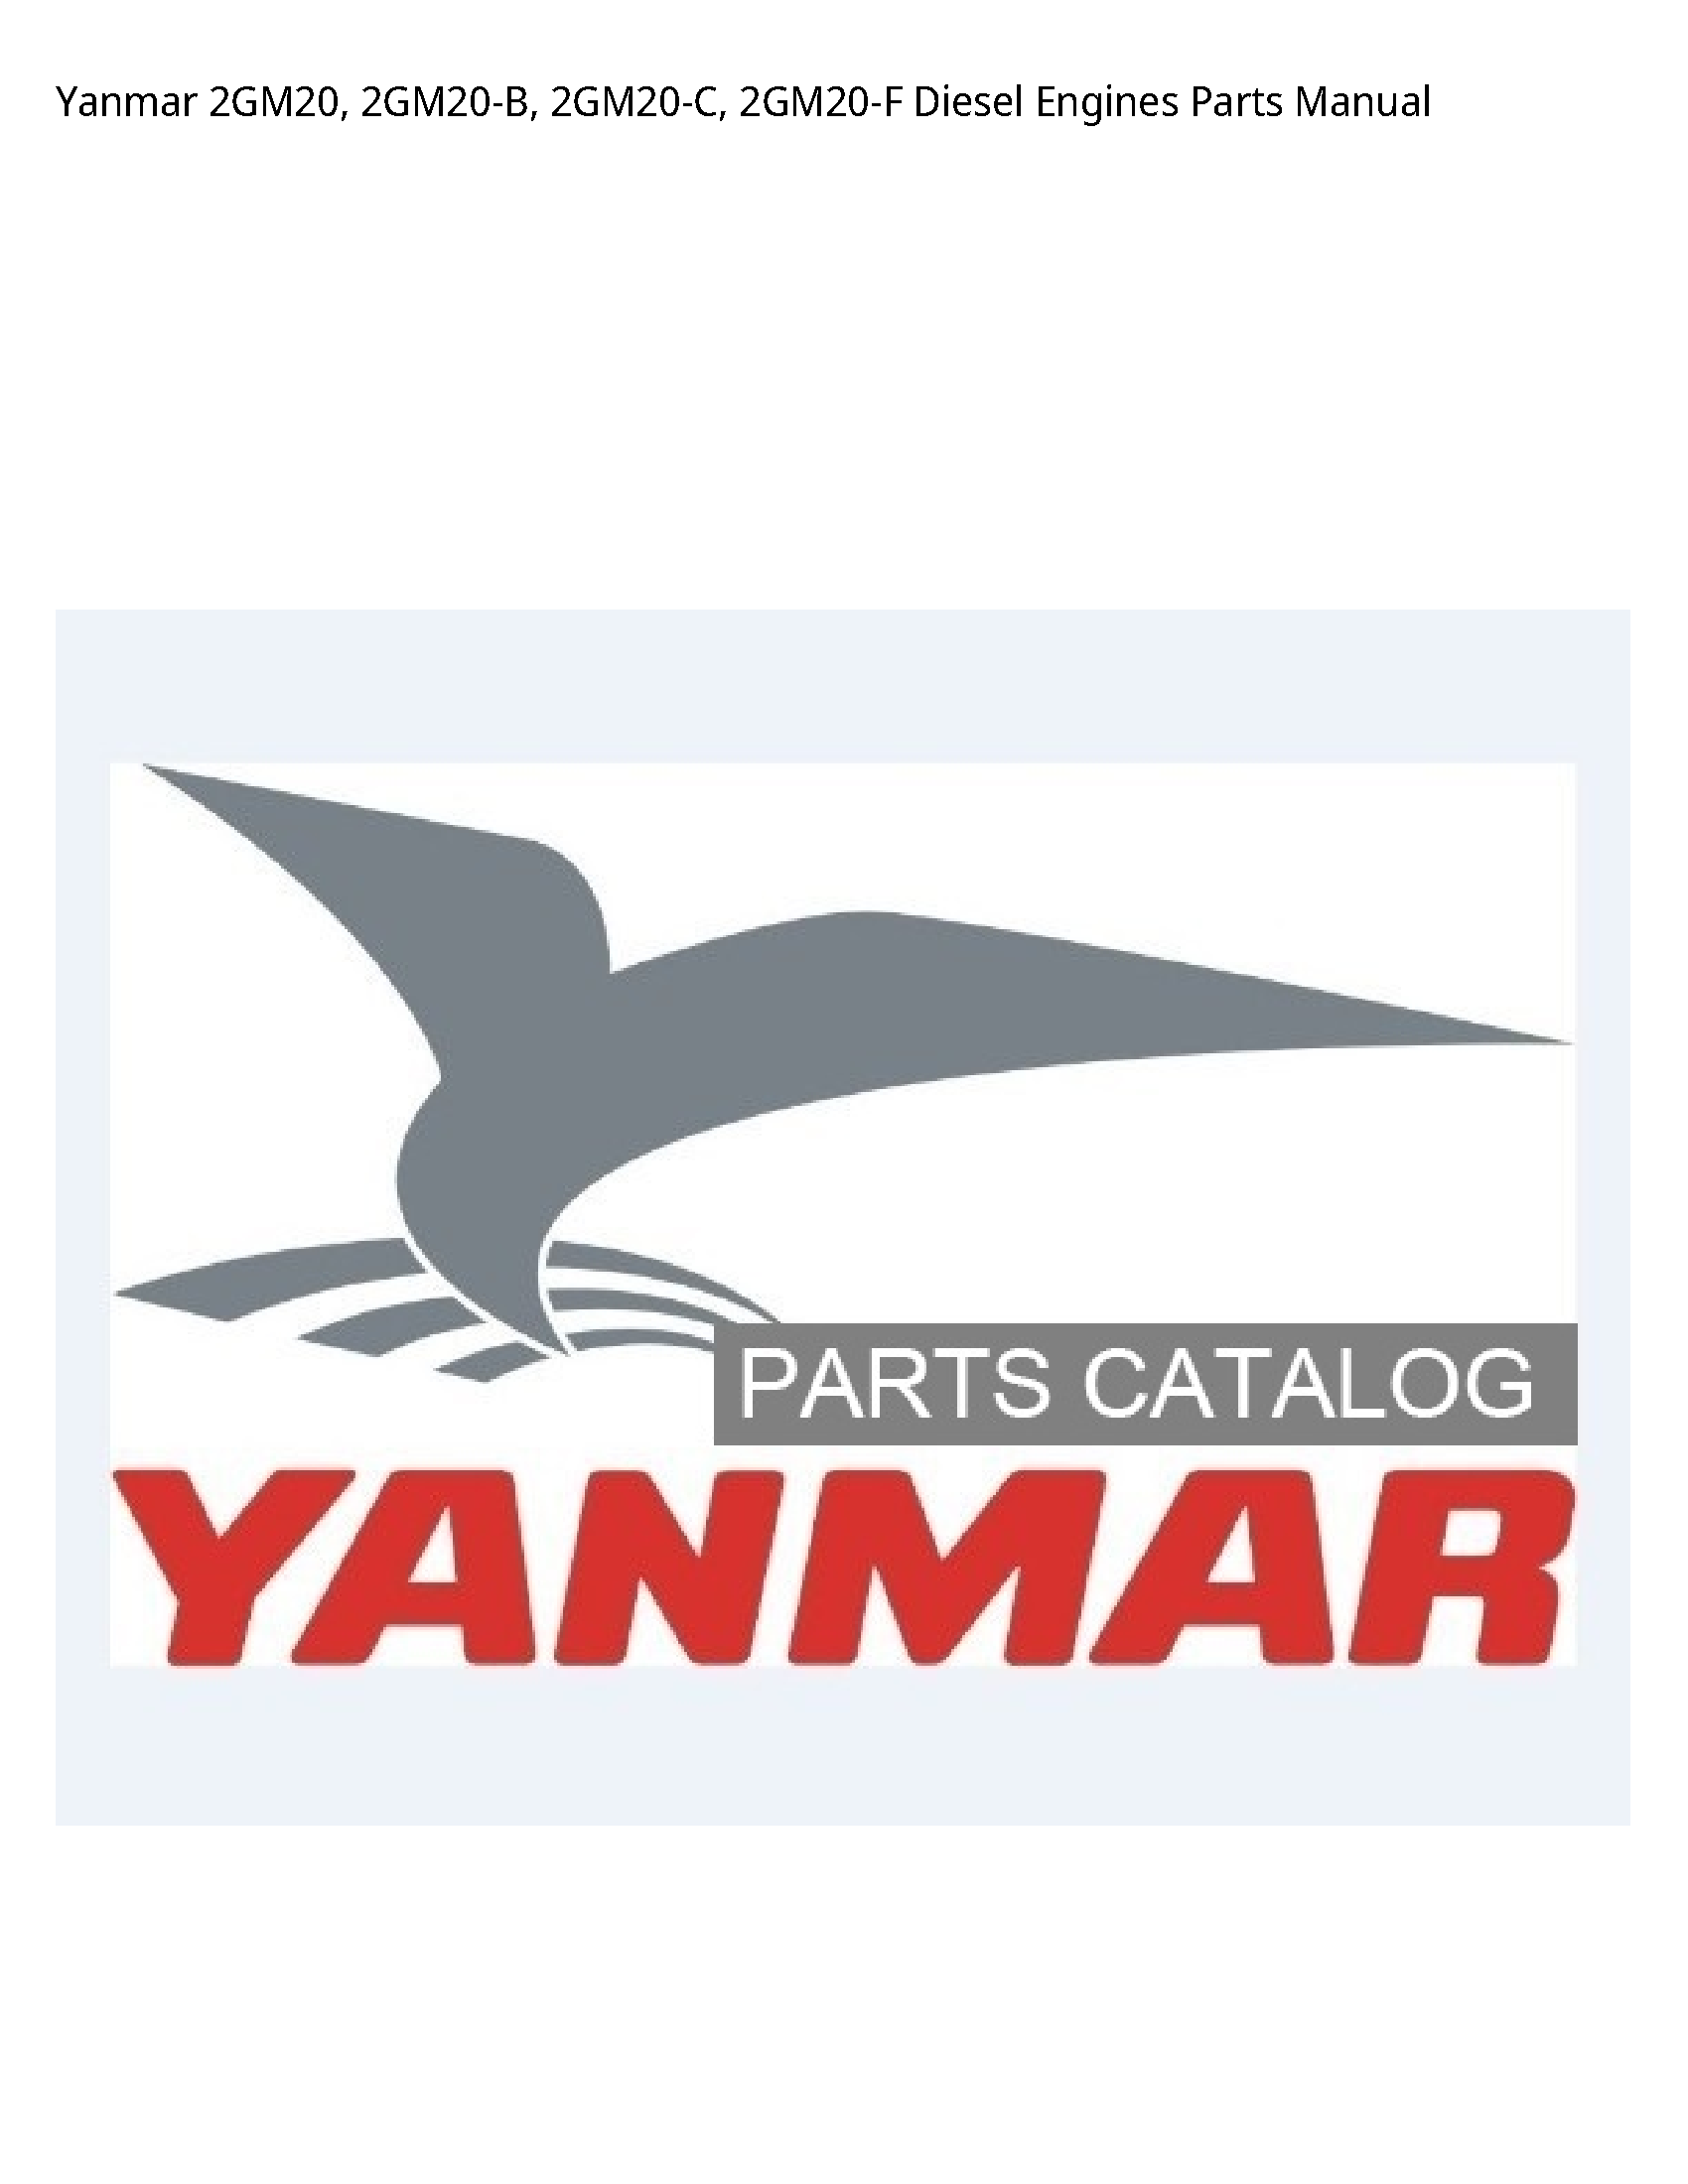 Yanmar 2GM20 Diesel Engines Parts manual